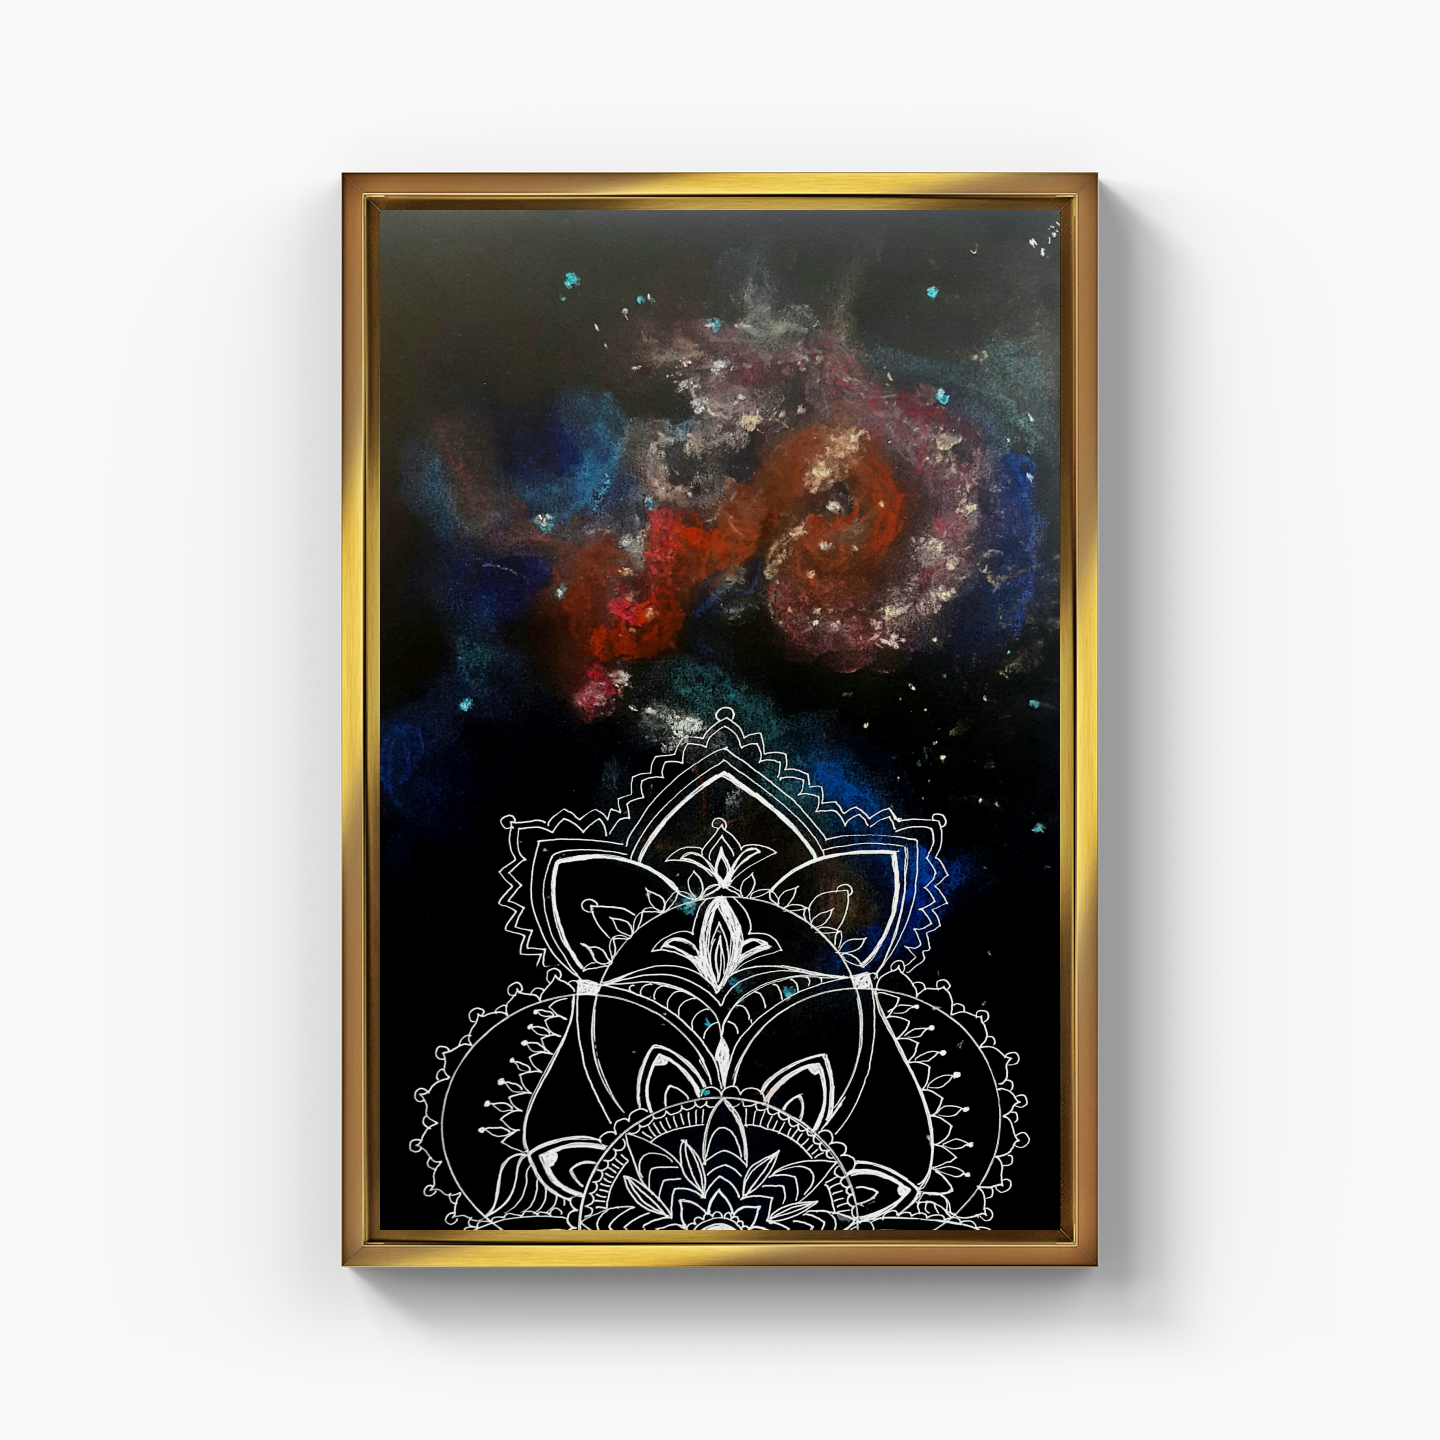 Mandala galaksi 2 - Kanvas Tablo